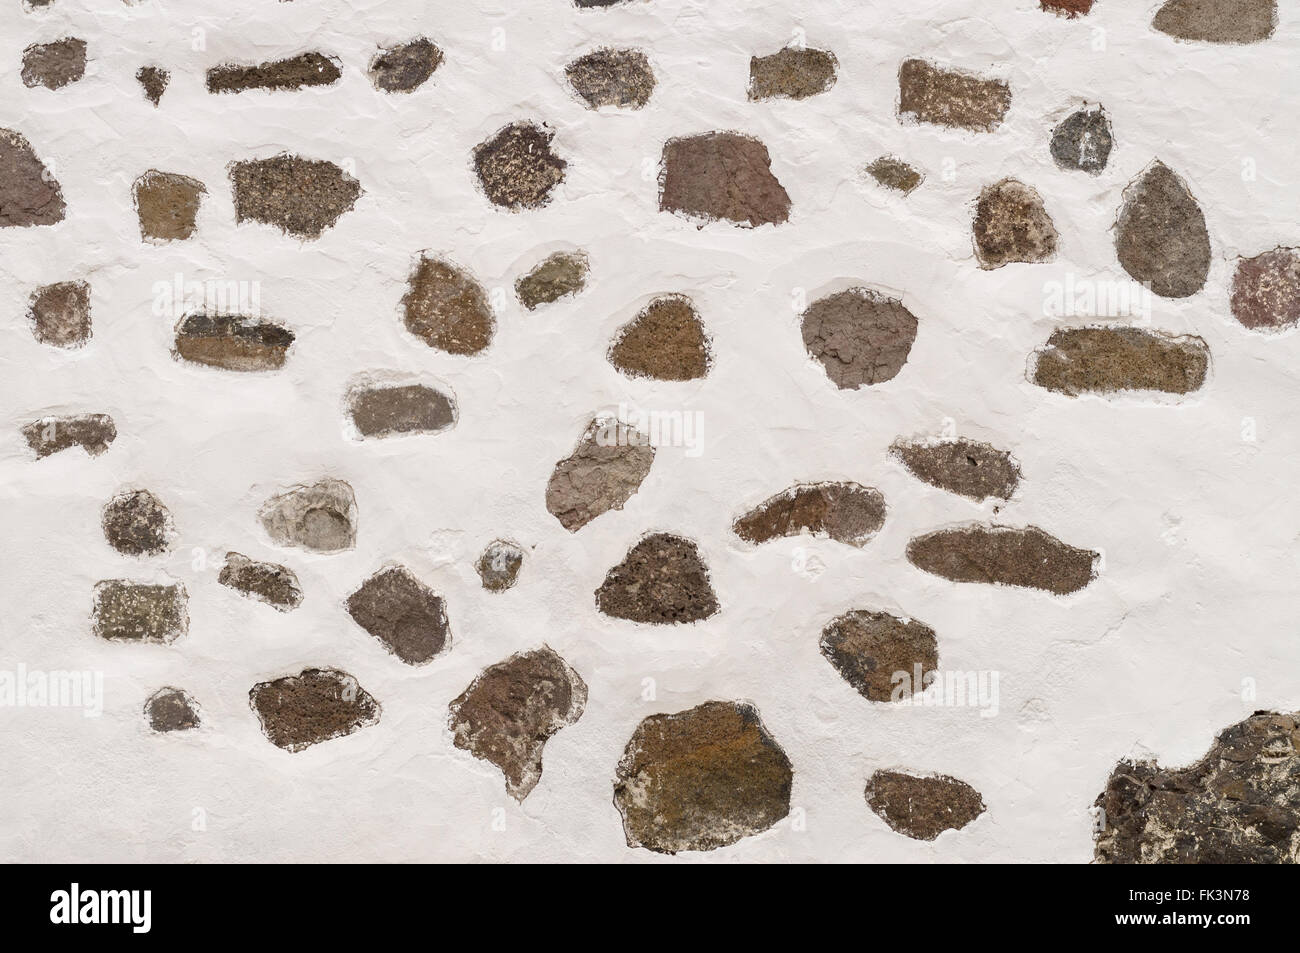 Hintergrund des Limewall mit unterschiedlicher Größe und Form Steinen Stockfoto